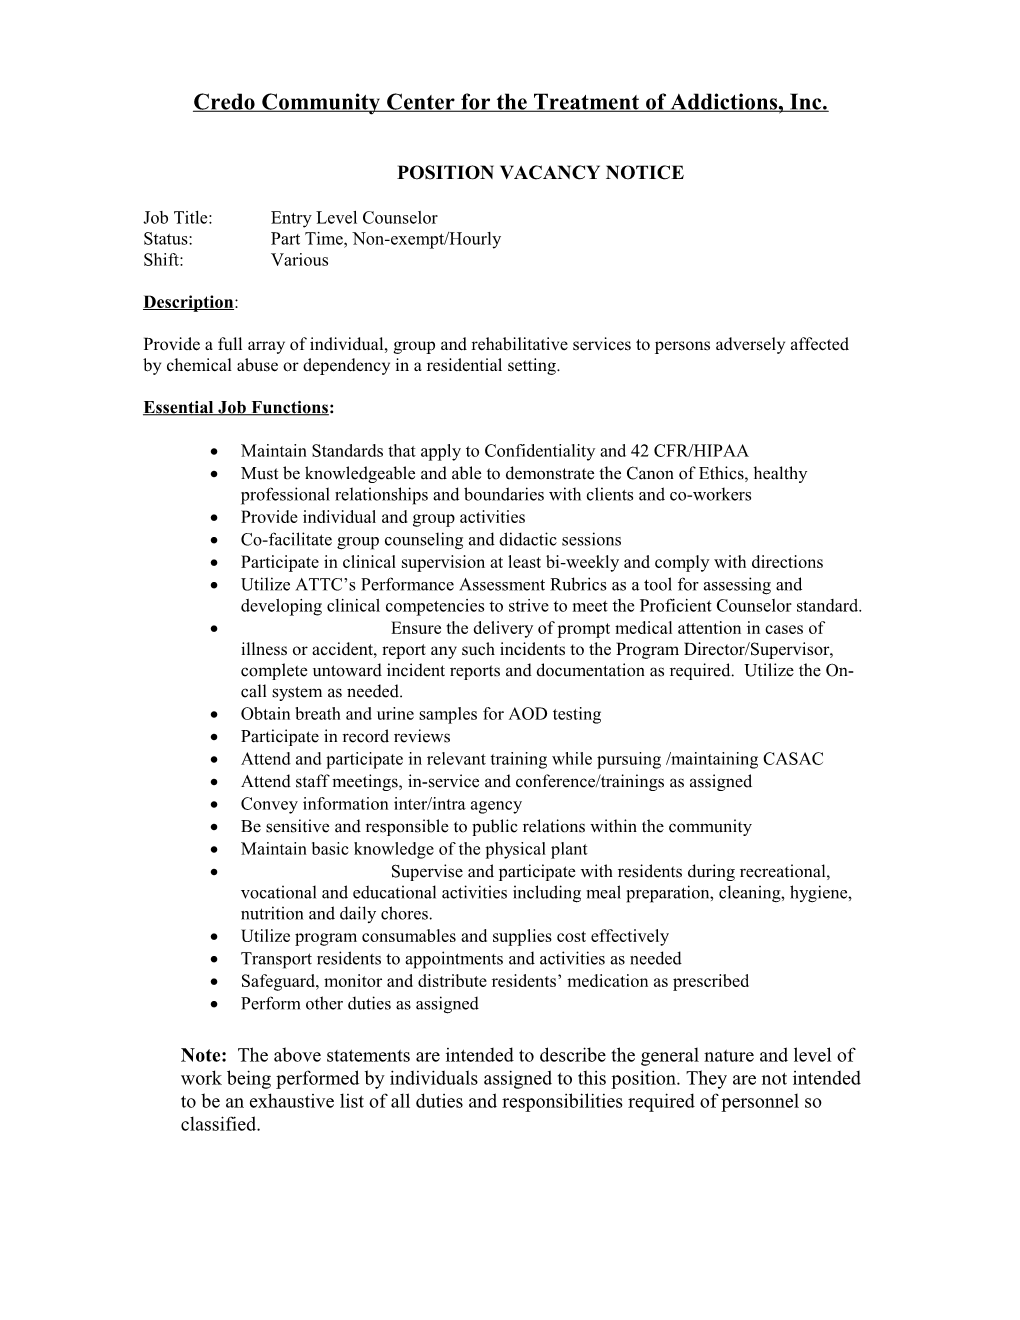 Position Vacancy Notice